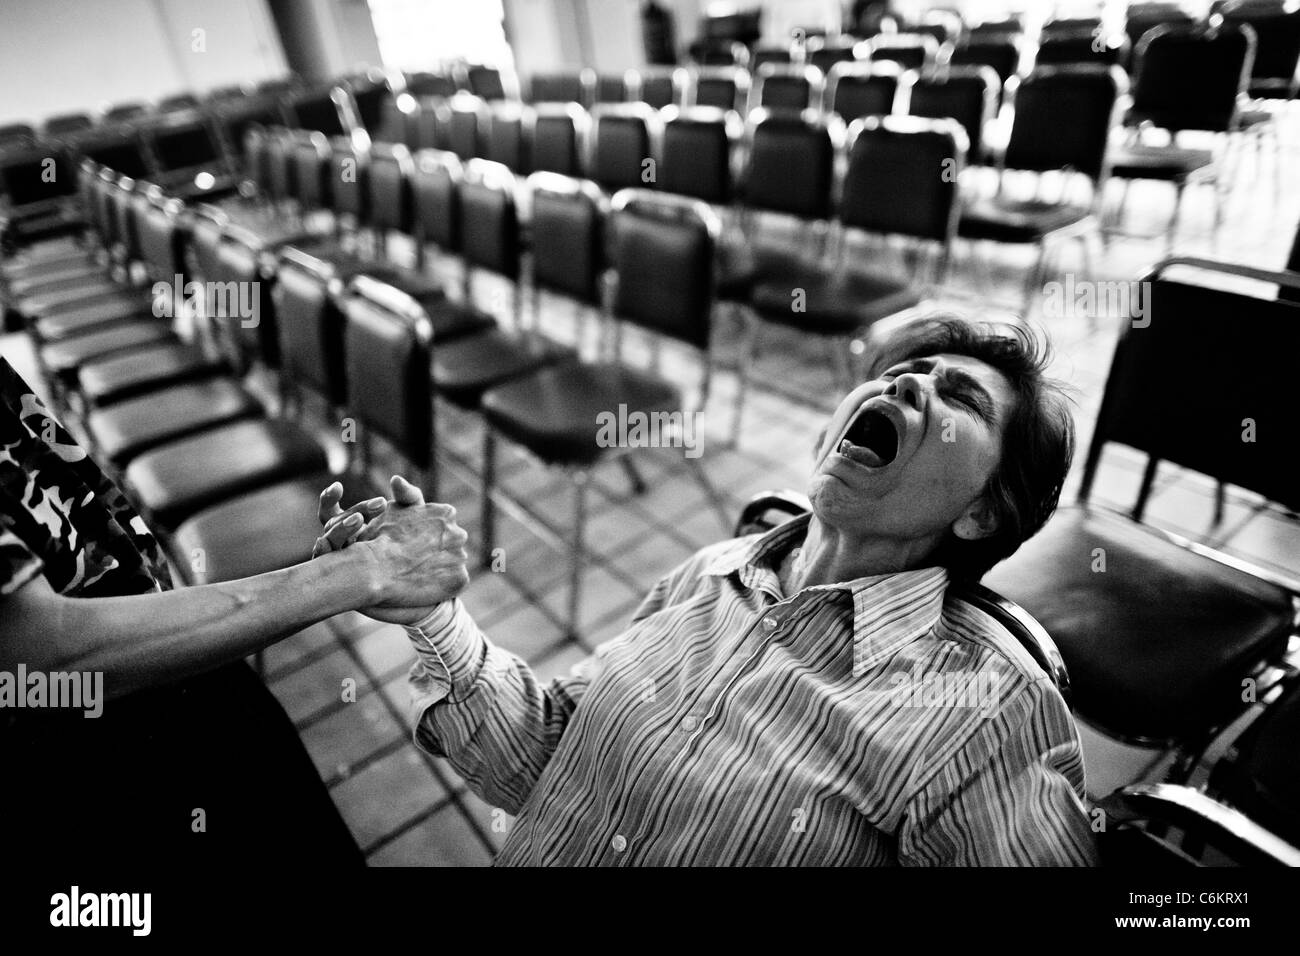 Eine mexikanische Frau schreit intensiv während des Exorzismus Ritus in der Kirche in Mexiko-Stadt, Mexiko durchgeführt. Stockfoto